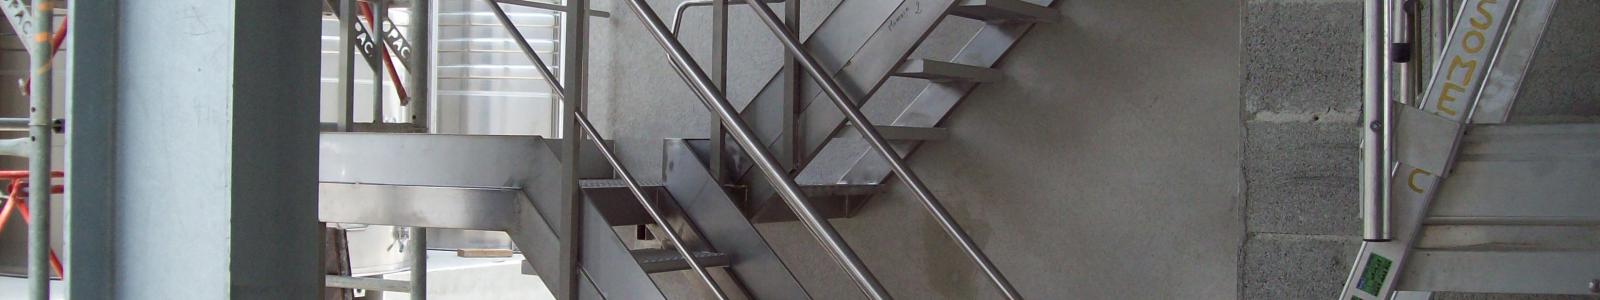 Escalier inox sur mesure avec mise en conformité sécurité